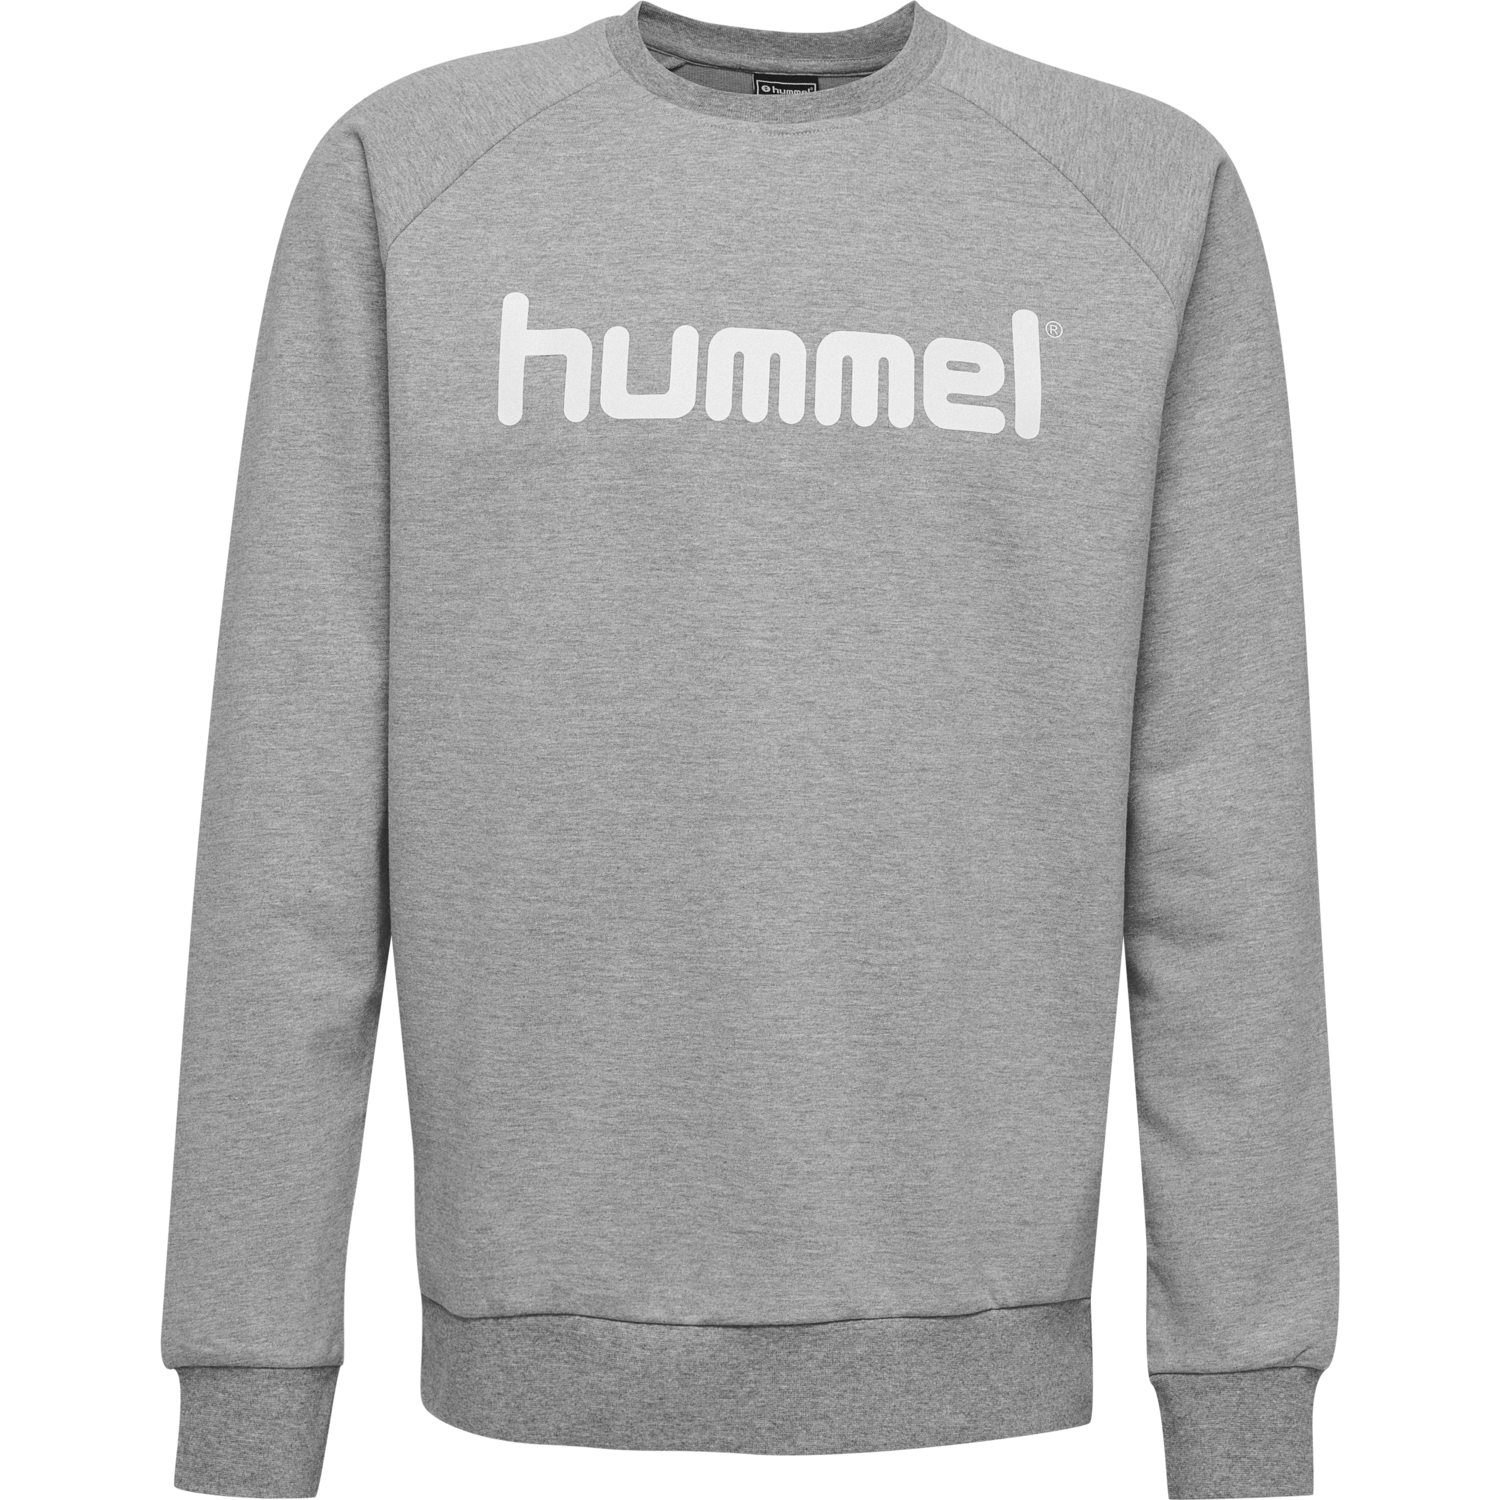 hummel Childrens Hmlgo Kids Cotton Logo Sweatshirt